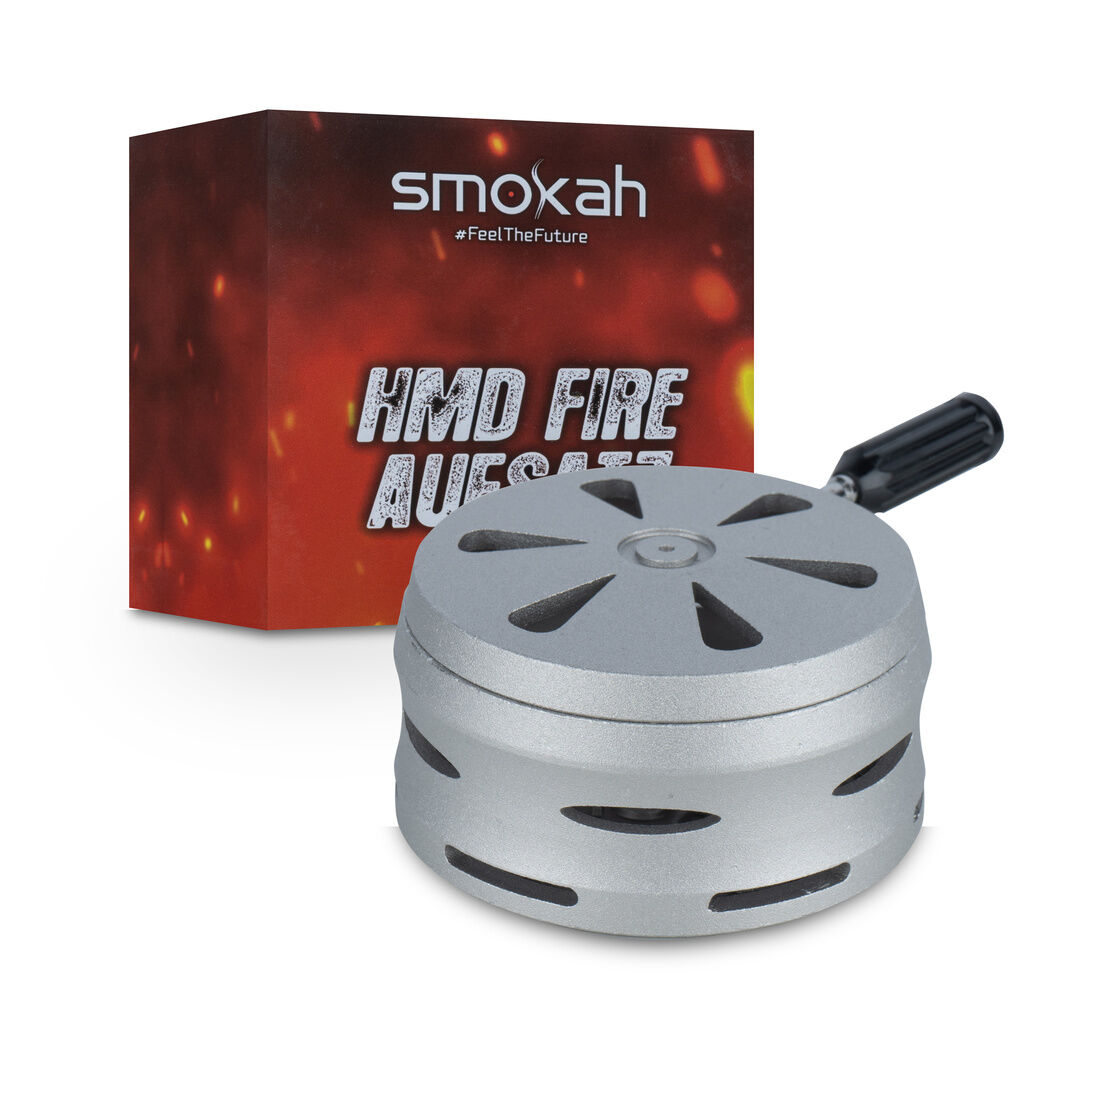 Smokah on Fire HMD